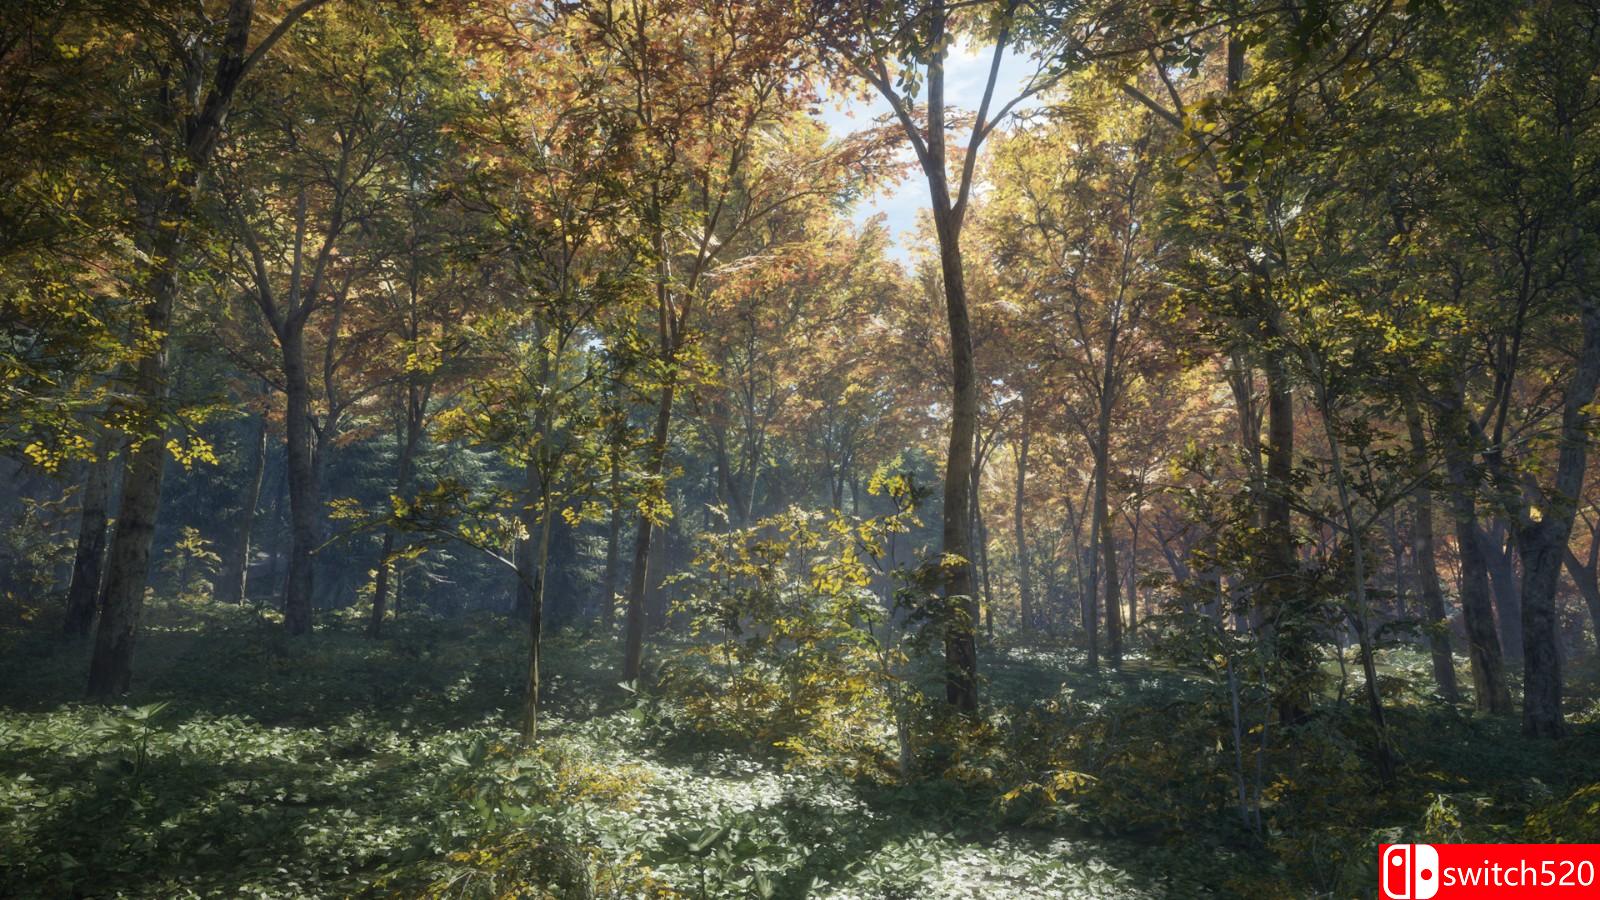 Epic喜加一：狩猎模拟游戏《猎人：荒野的呼唤》免费领取-易佰下载